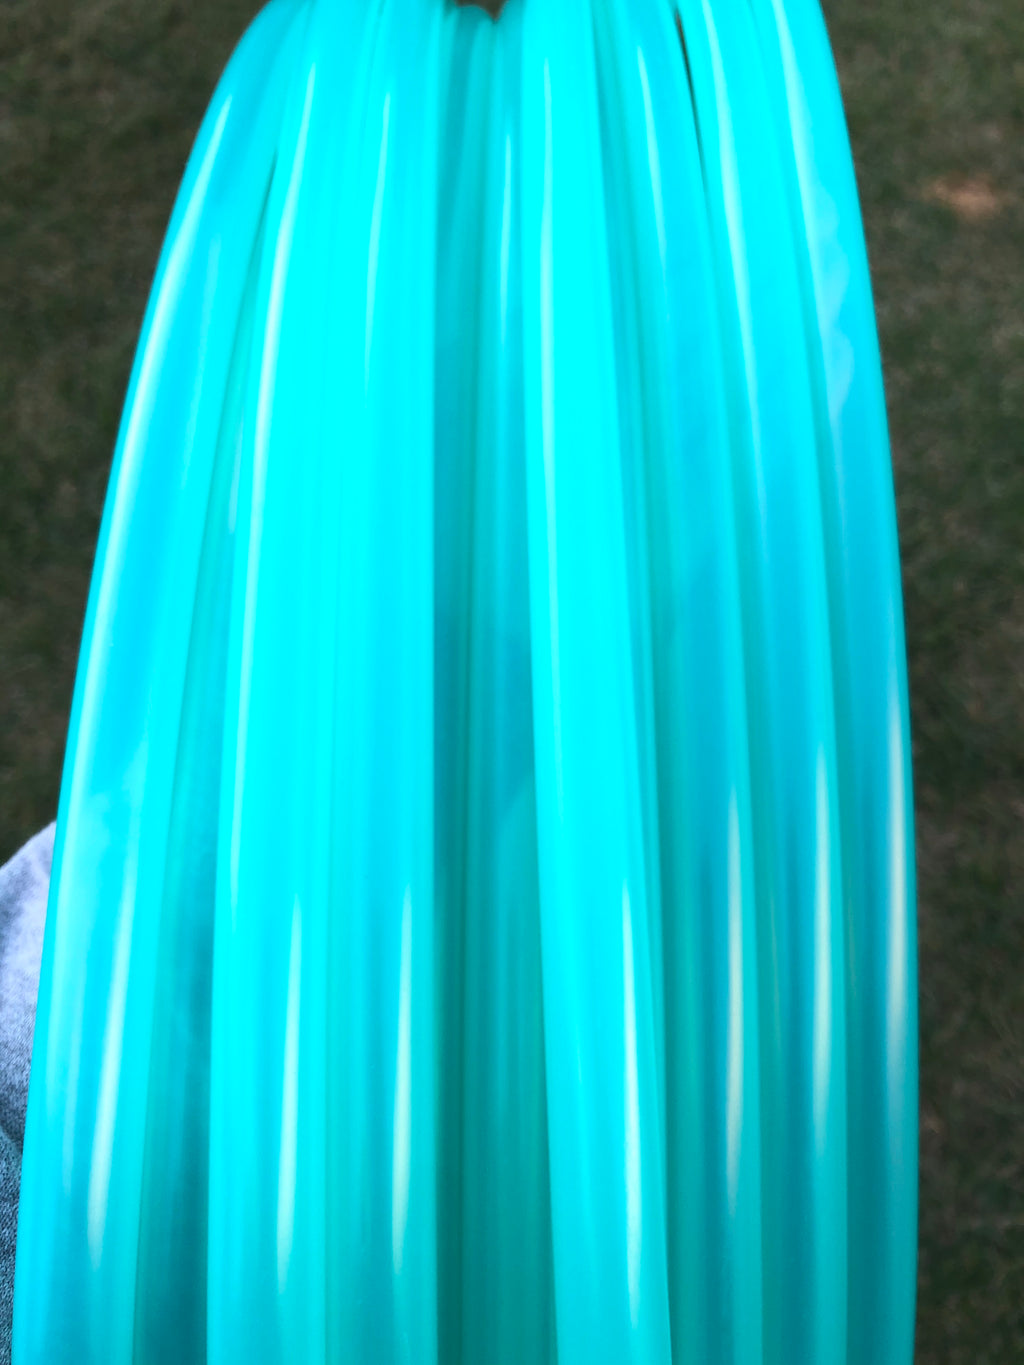 Teal Fusion Gloss UV Polypro Tubing - Bio-luminescent  5/8" Hula Hoop